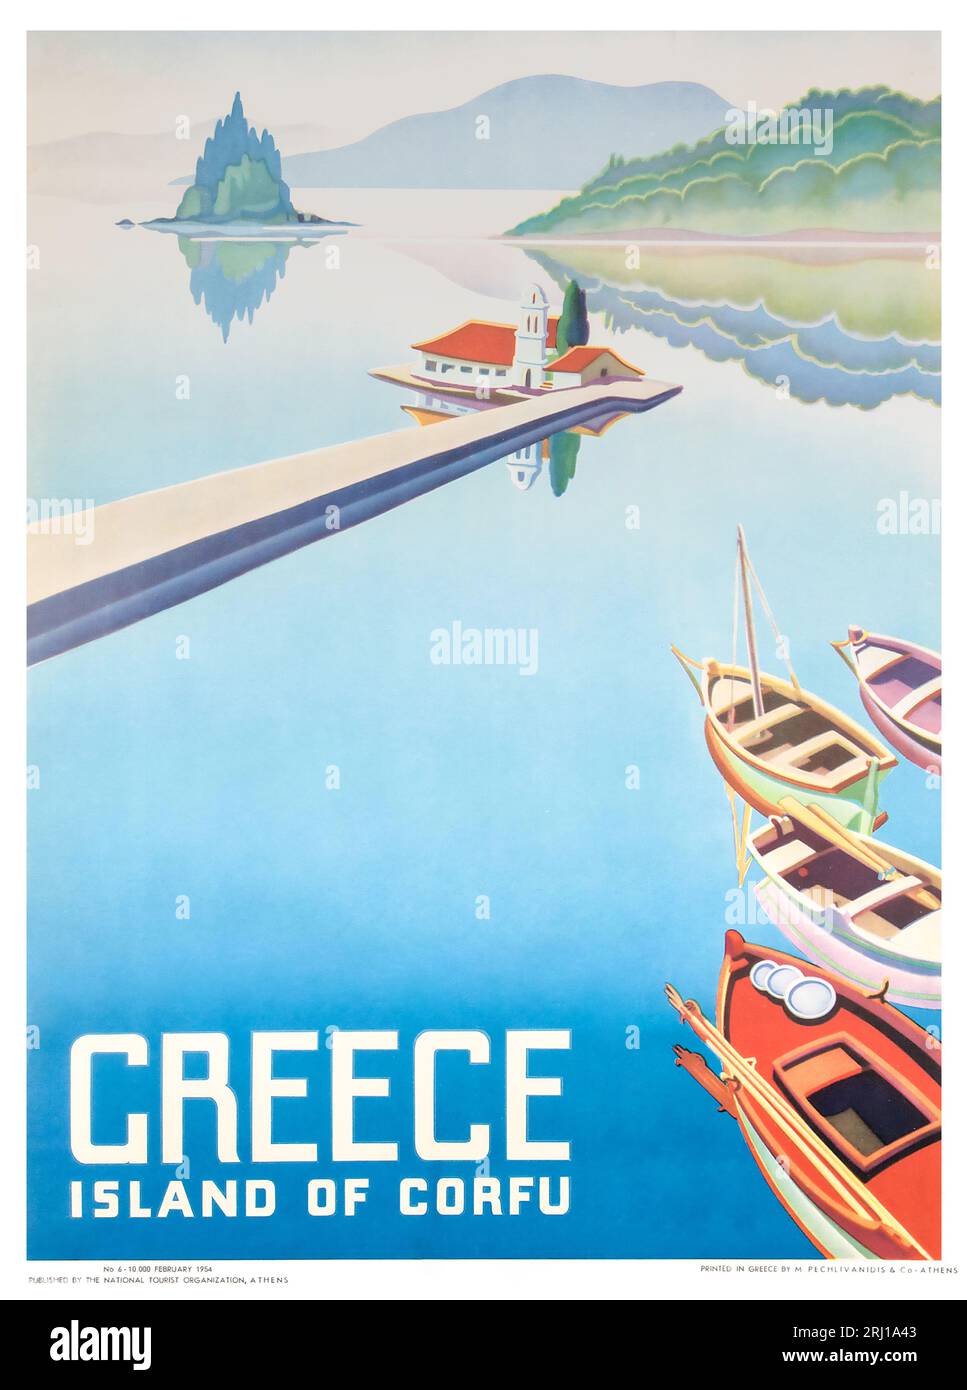 1954 affiche de voyage vintage pour l'île de Corfou, Grèce Banque D'Images